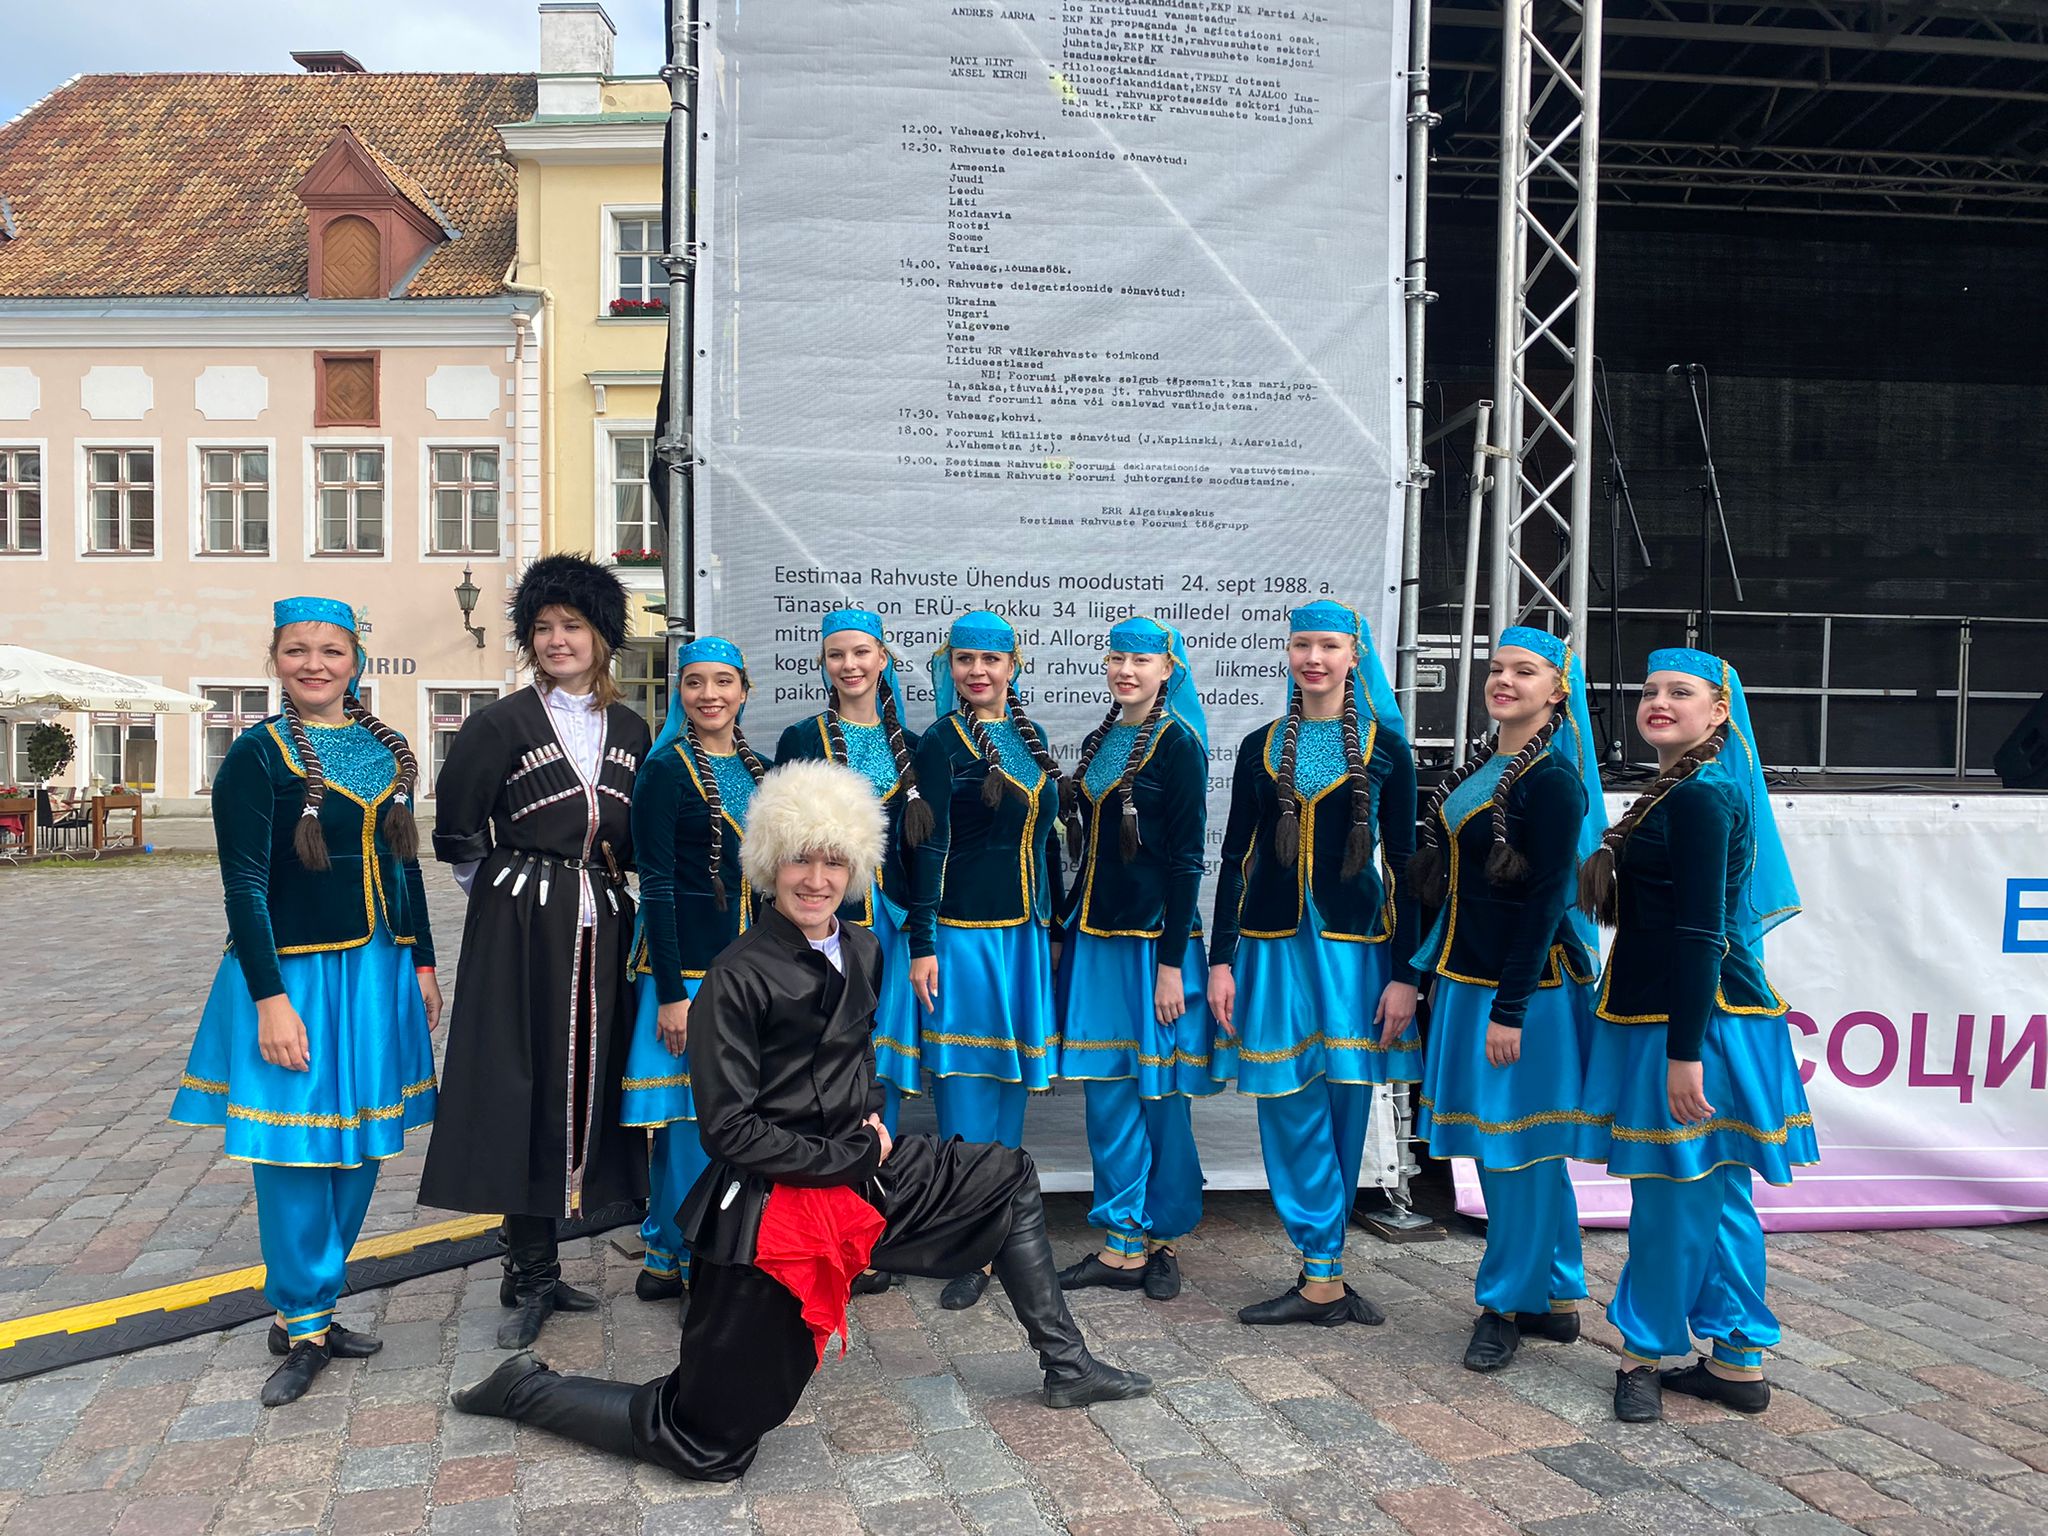 Azərbaycan Estoniyada keçirilən festivalda təmsil olunub